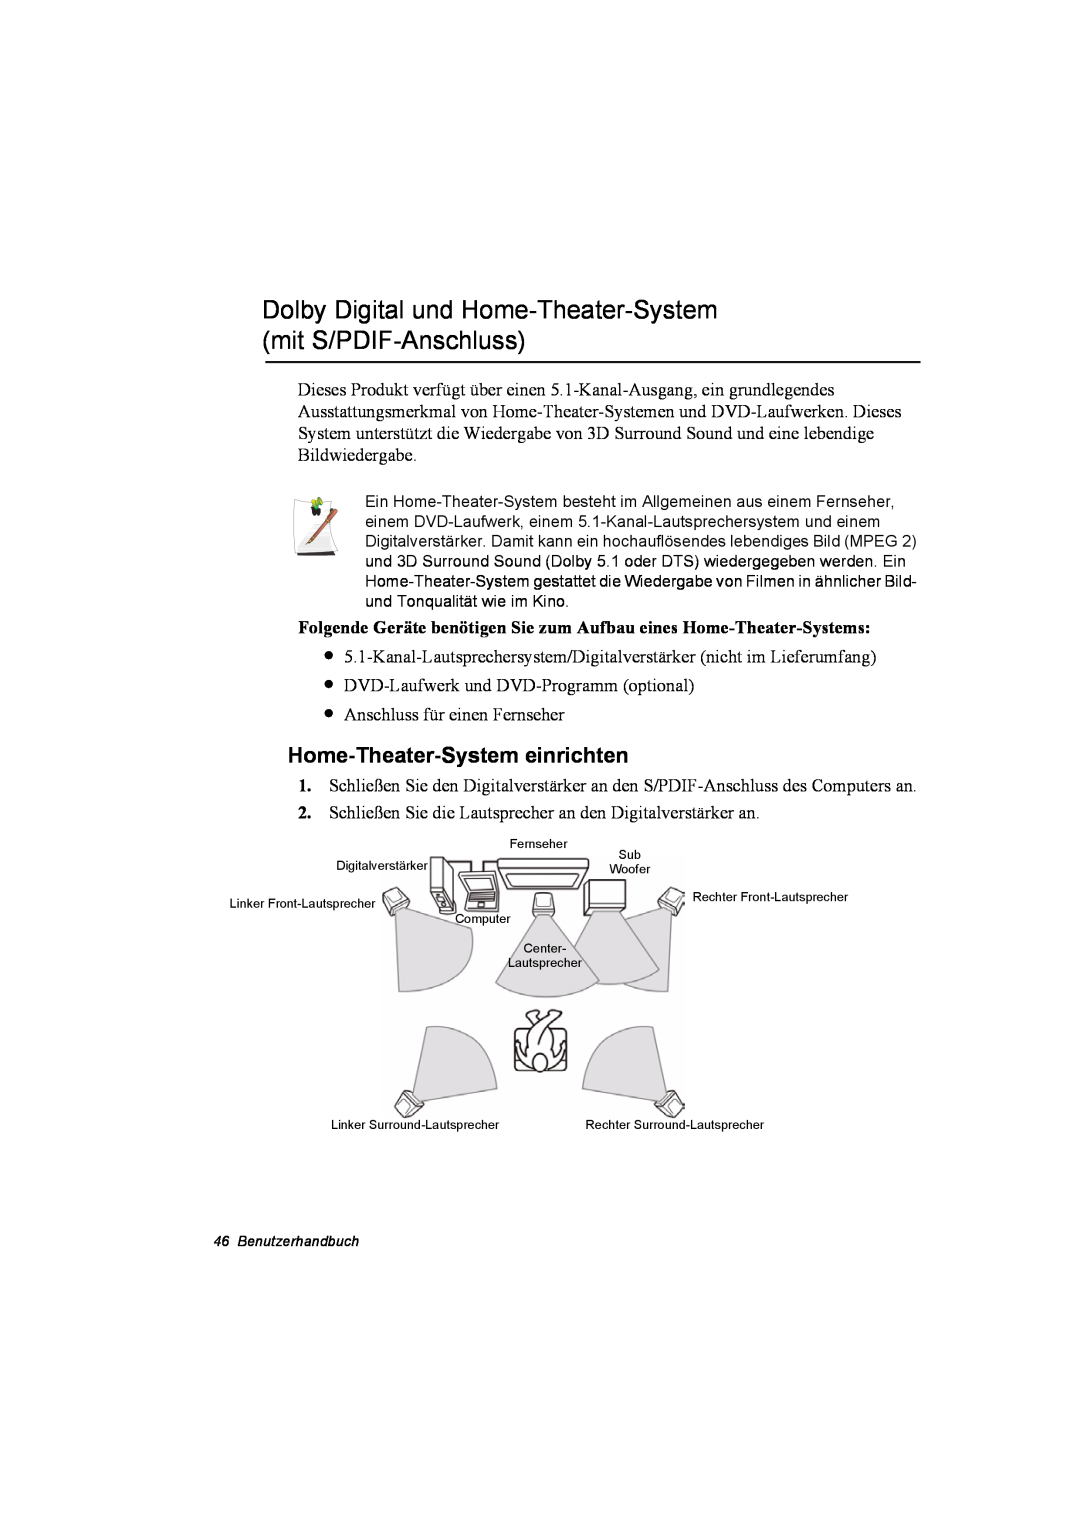 Samsung NQ10TP2X04/SUK manual Dolby Digital und Home-Theater-System mit S/PDIF-Anschluss, Home-Theater-System einrichten 